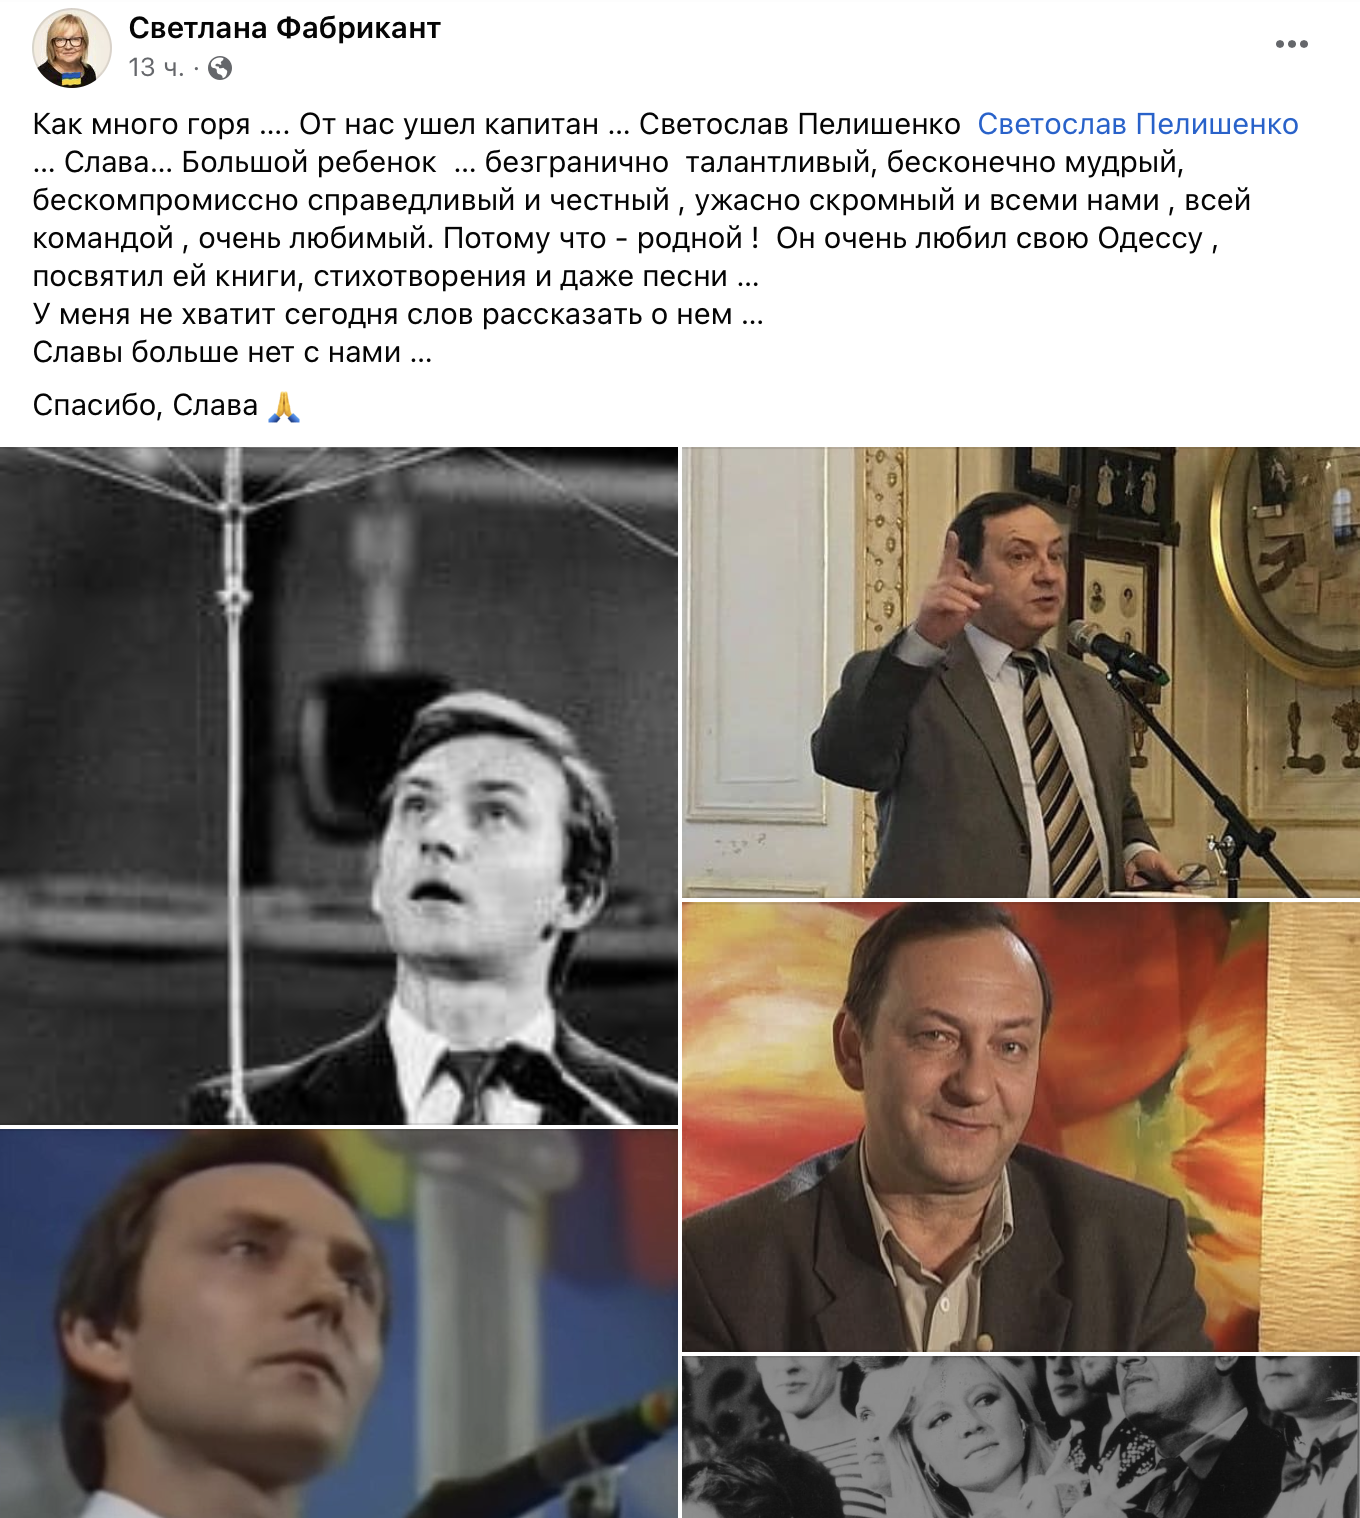 Умер капитан "Одесских джентльменов": Святослав Пелишенко с 1991 года жил и работал в России